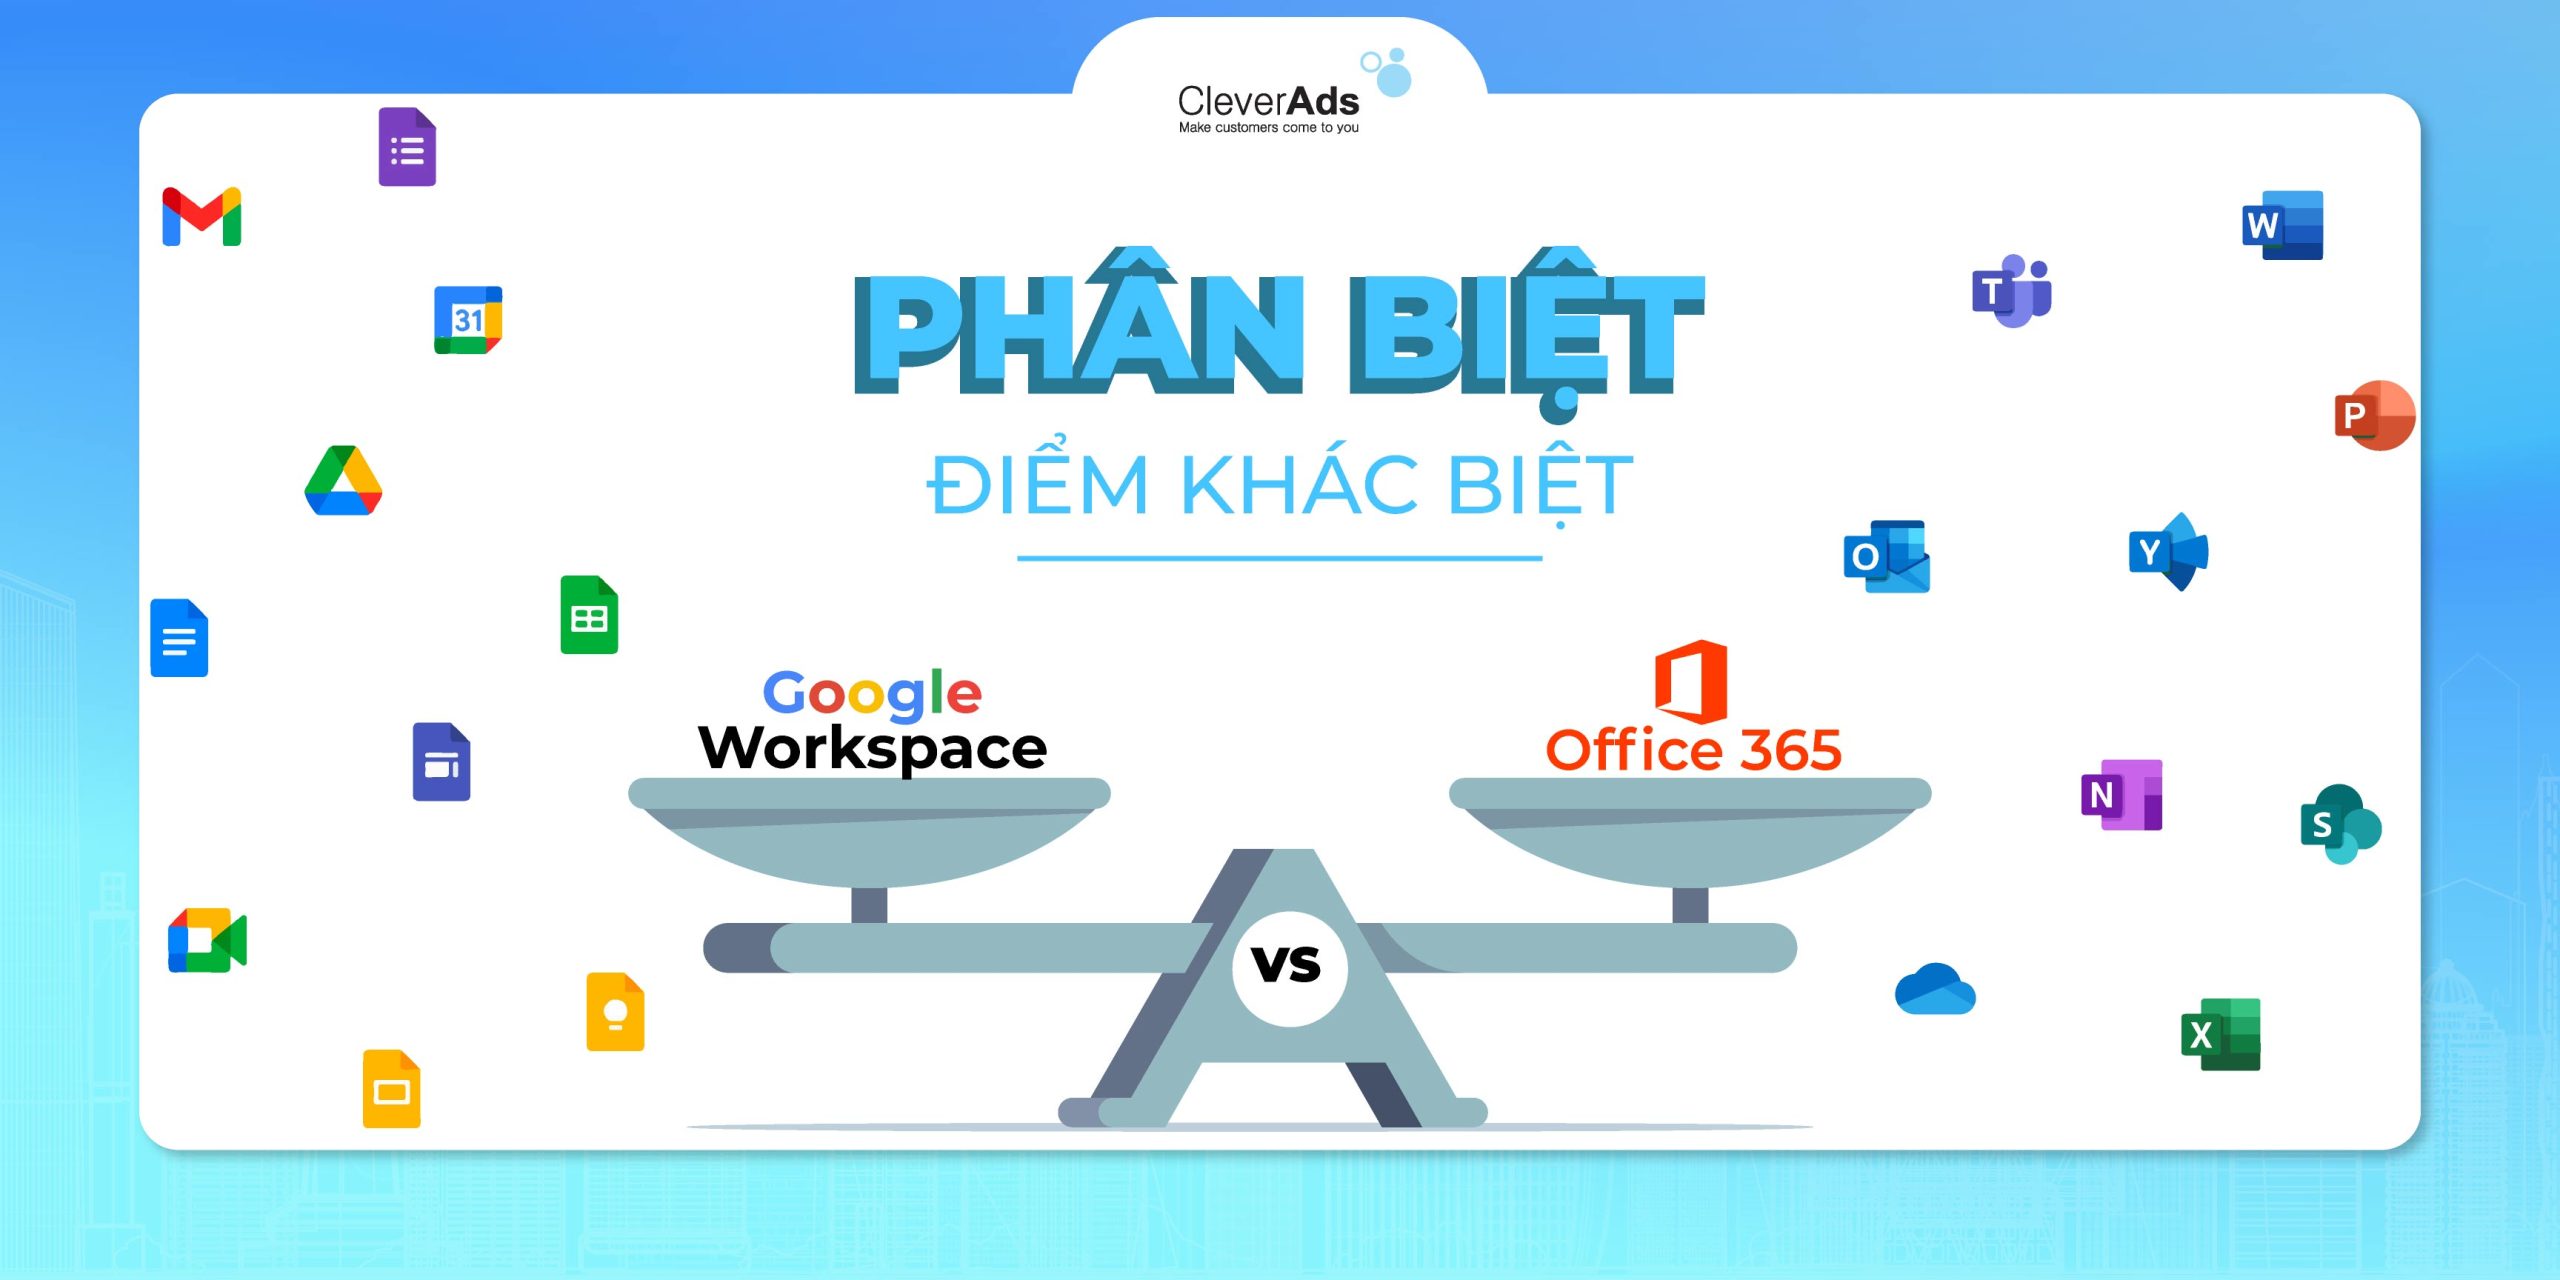 Phân biệt điểm khác biệt giữa Google Workspace và Office 365